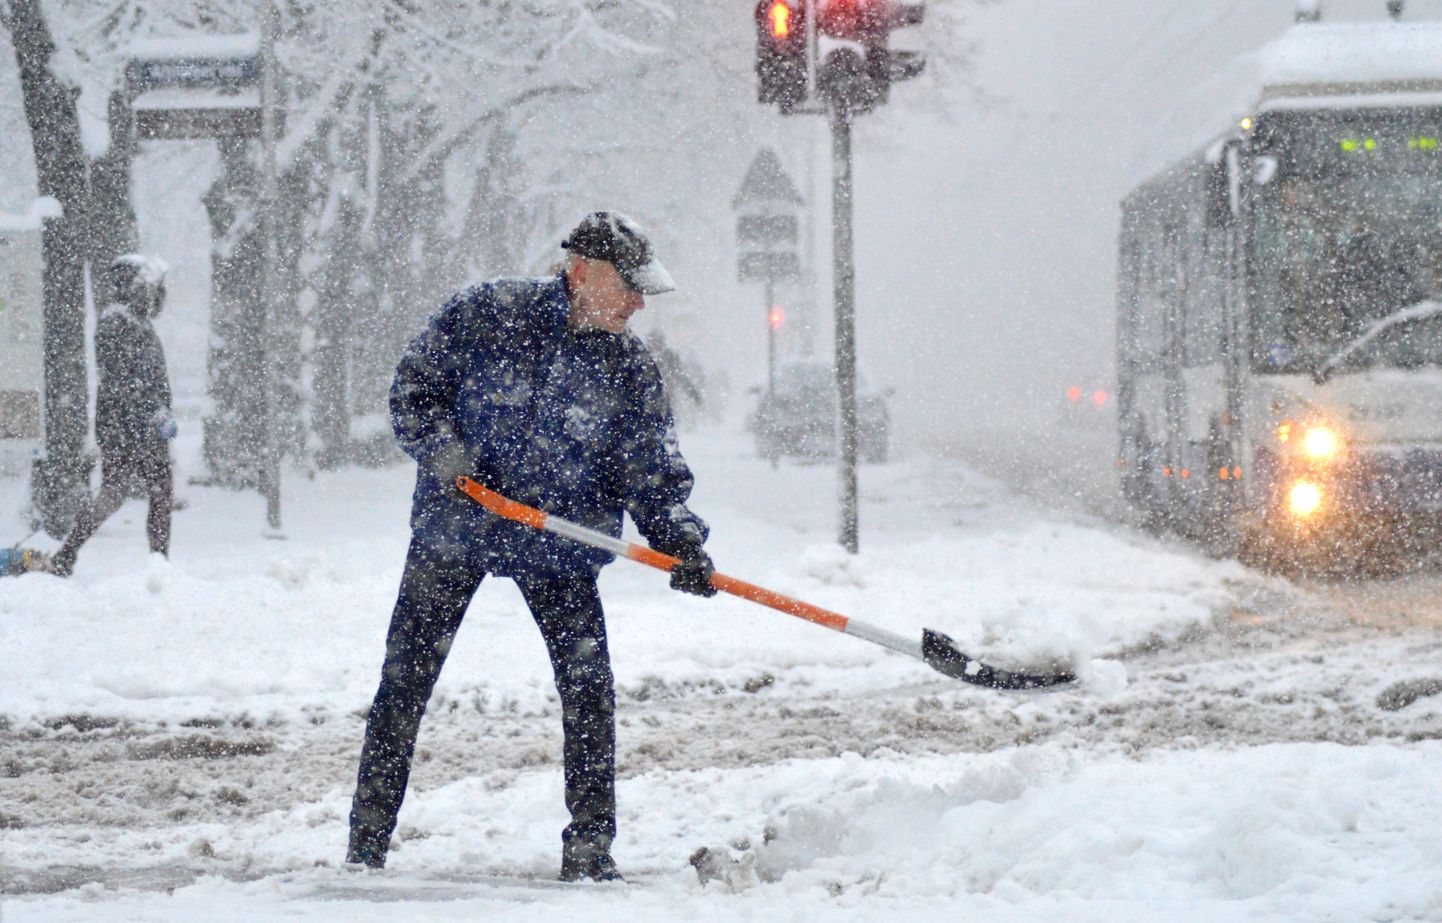 Rīgā sasnigusi visbiezākā sniega sega - jau 20 centimetri, apgrūtinot gājēju un transportlīdzekļu pārvietošanos.